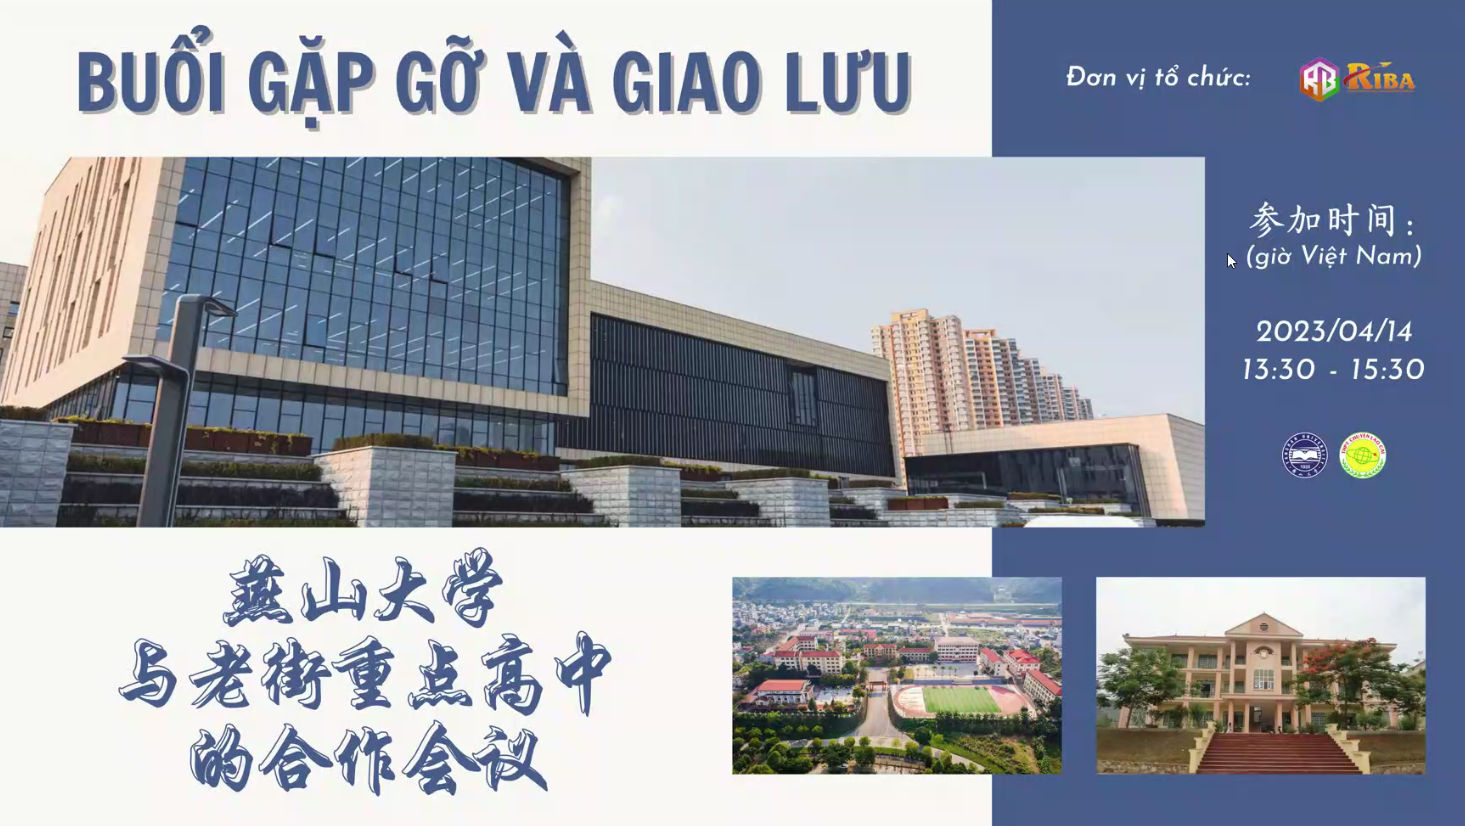 Buổi hội nghị hợp tác giữa Đại học Yến Sơn và THPT Chuyên Lào Cai 2023